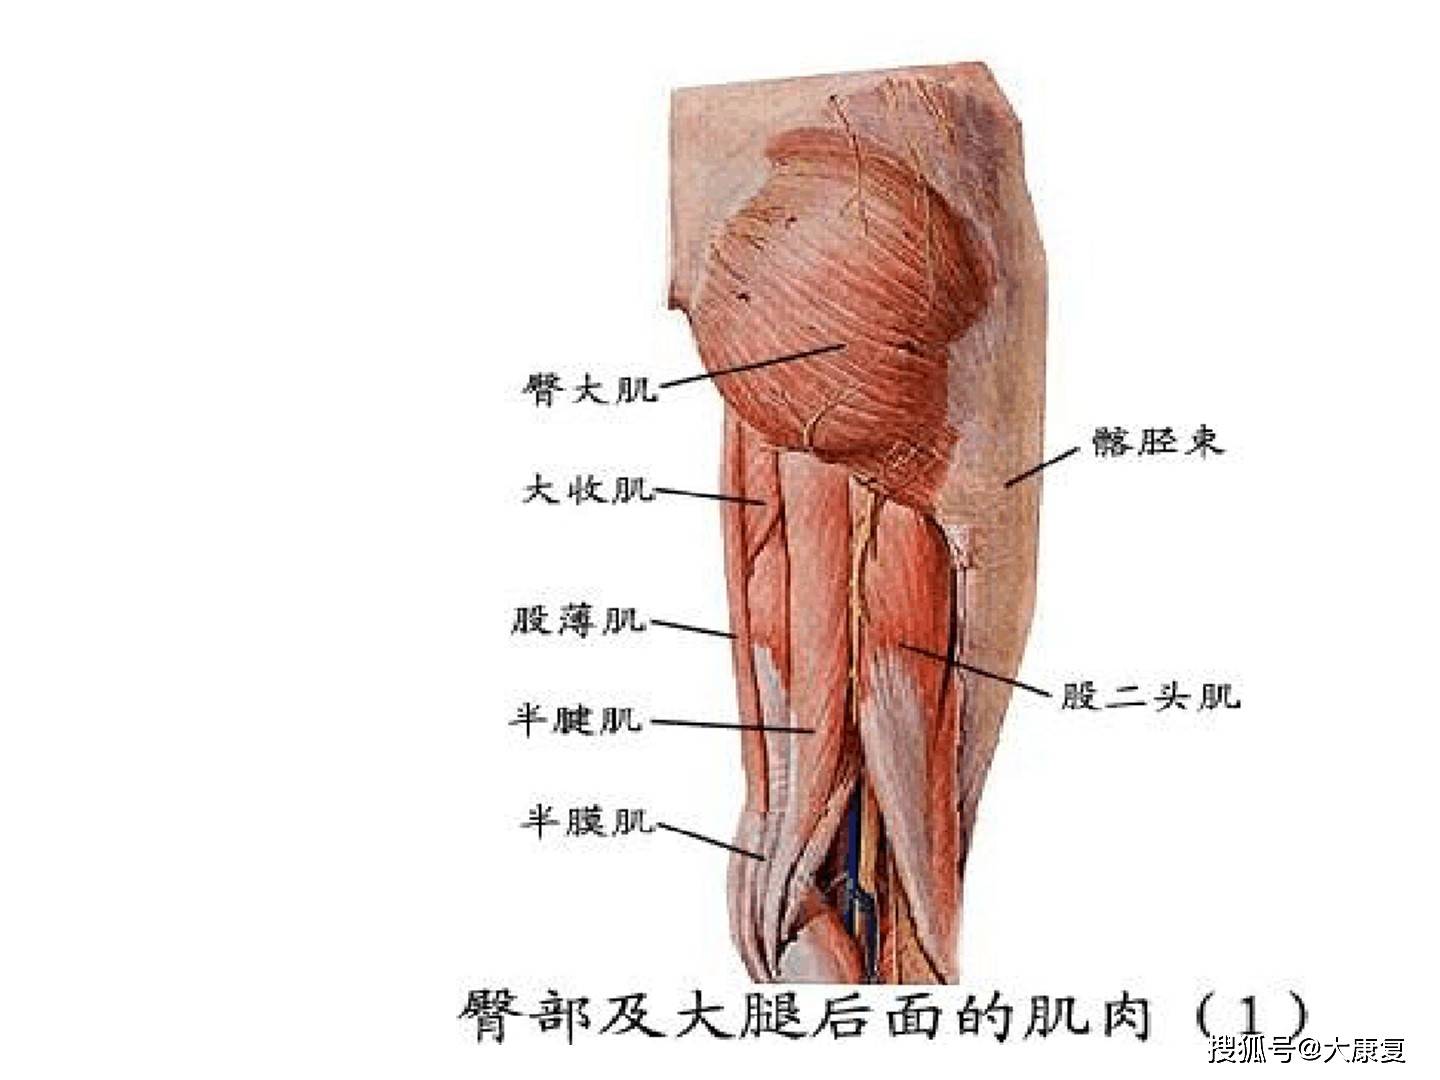 大腿肌腱在哪个位置图片